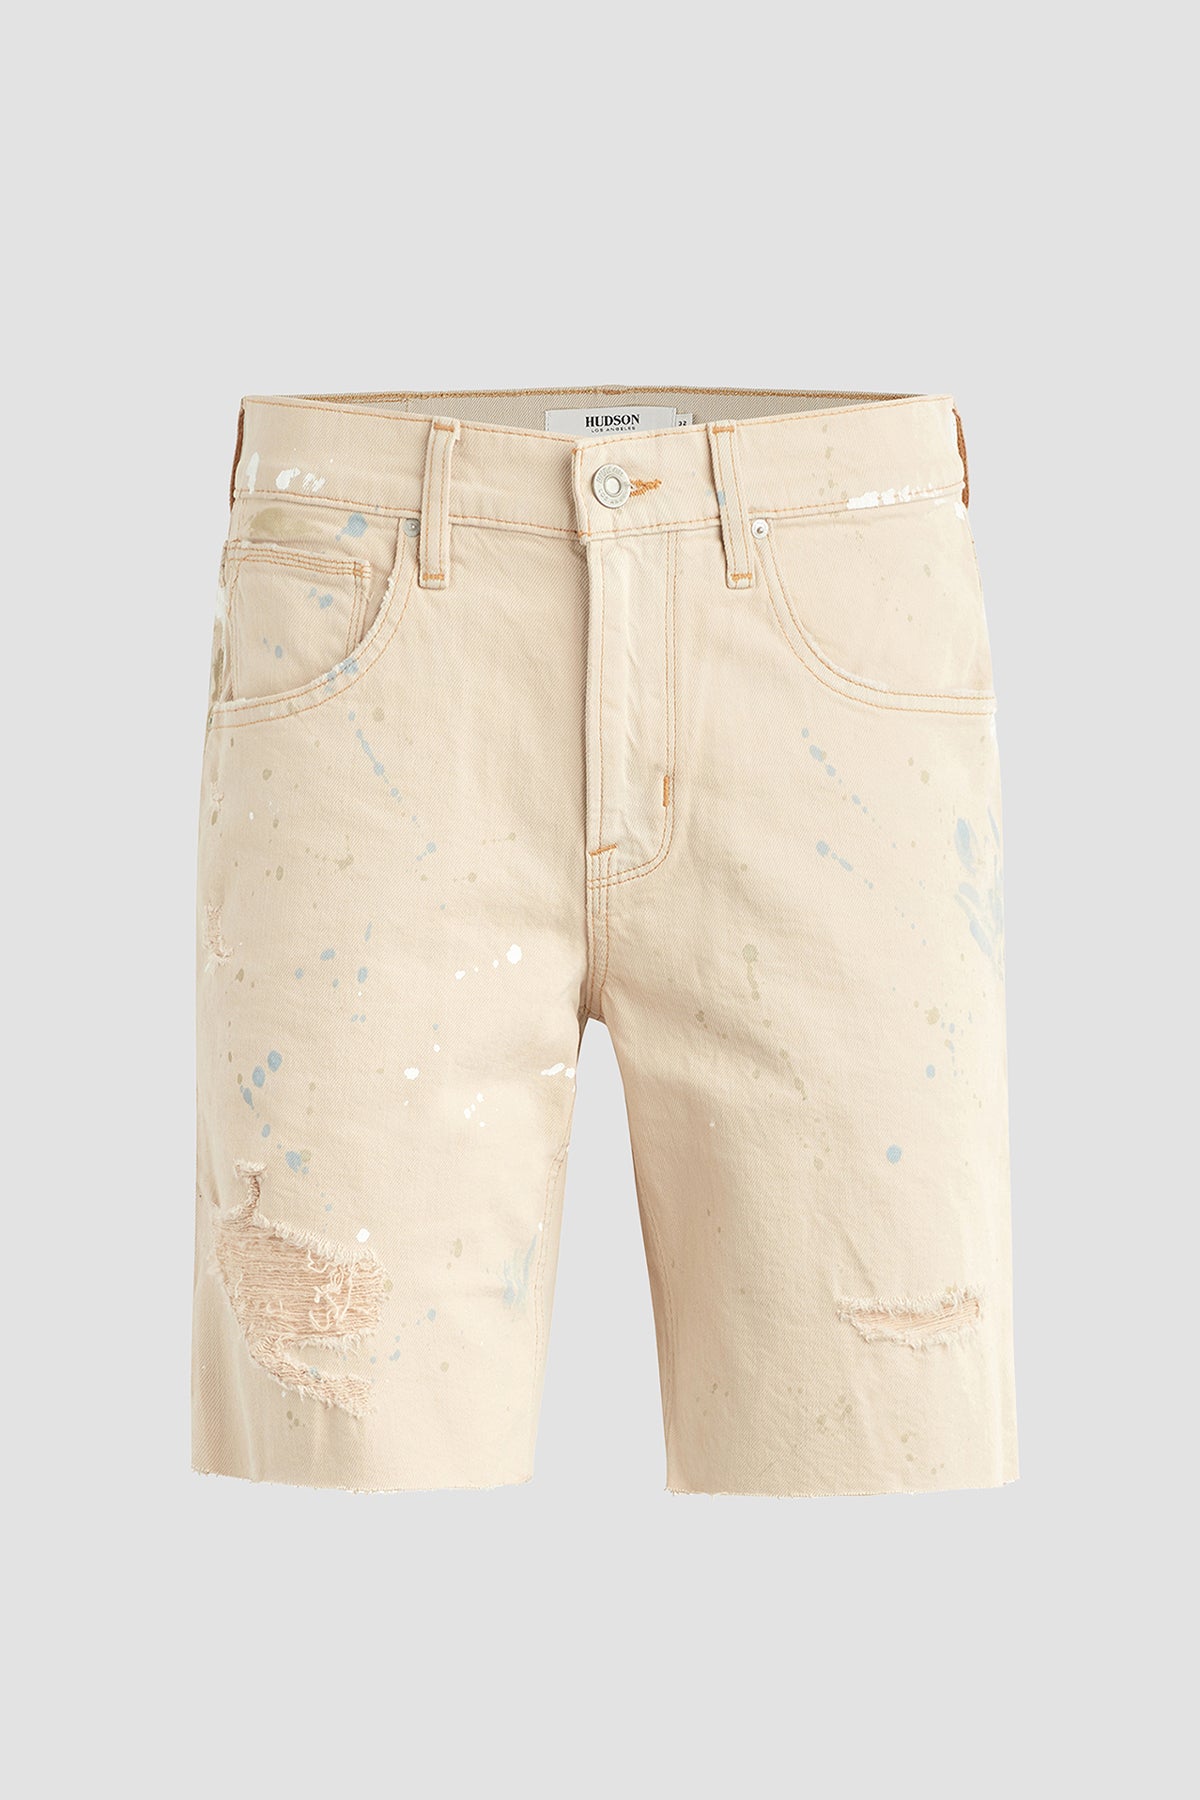 Levi's 501 Men's Denim Jean Cut-Off Shorts Button Fly Classic Blue Wash  Size 36 | Denim jeans men, Mens denim, Cut off shorts